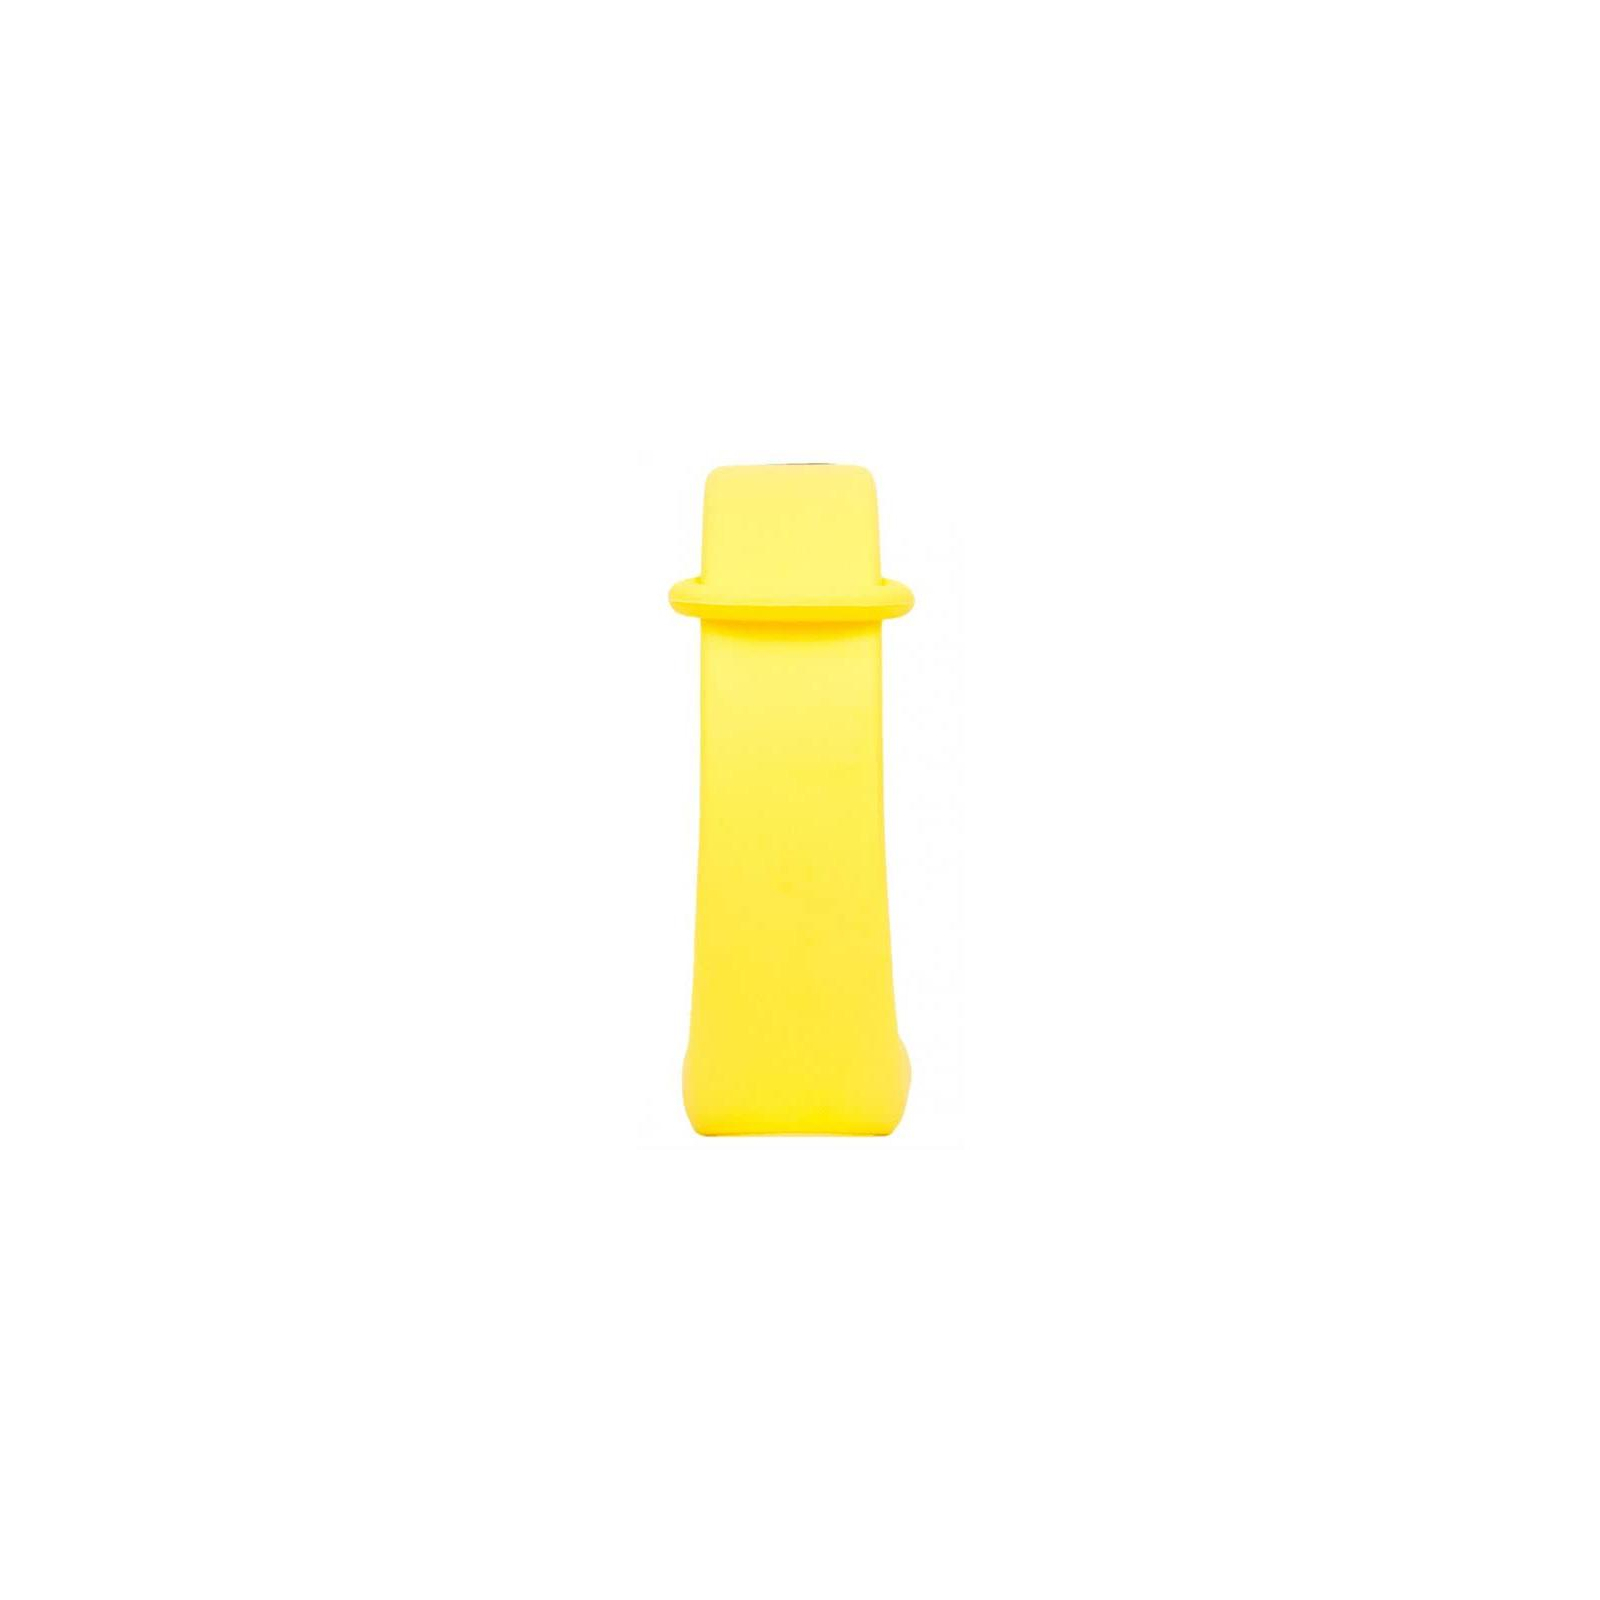 Ремешок для фитнес браслета Xiaomi Mi Band 2 Yellow (48091) изображение 5